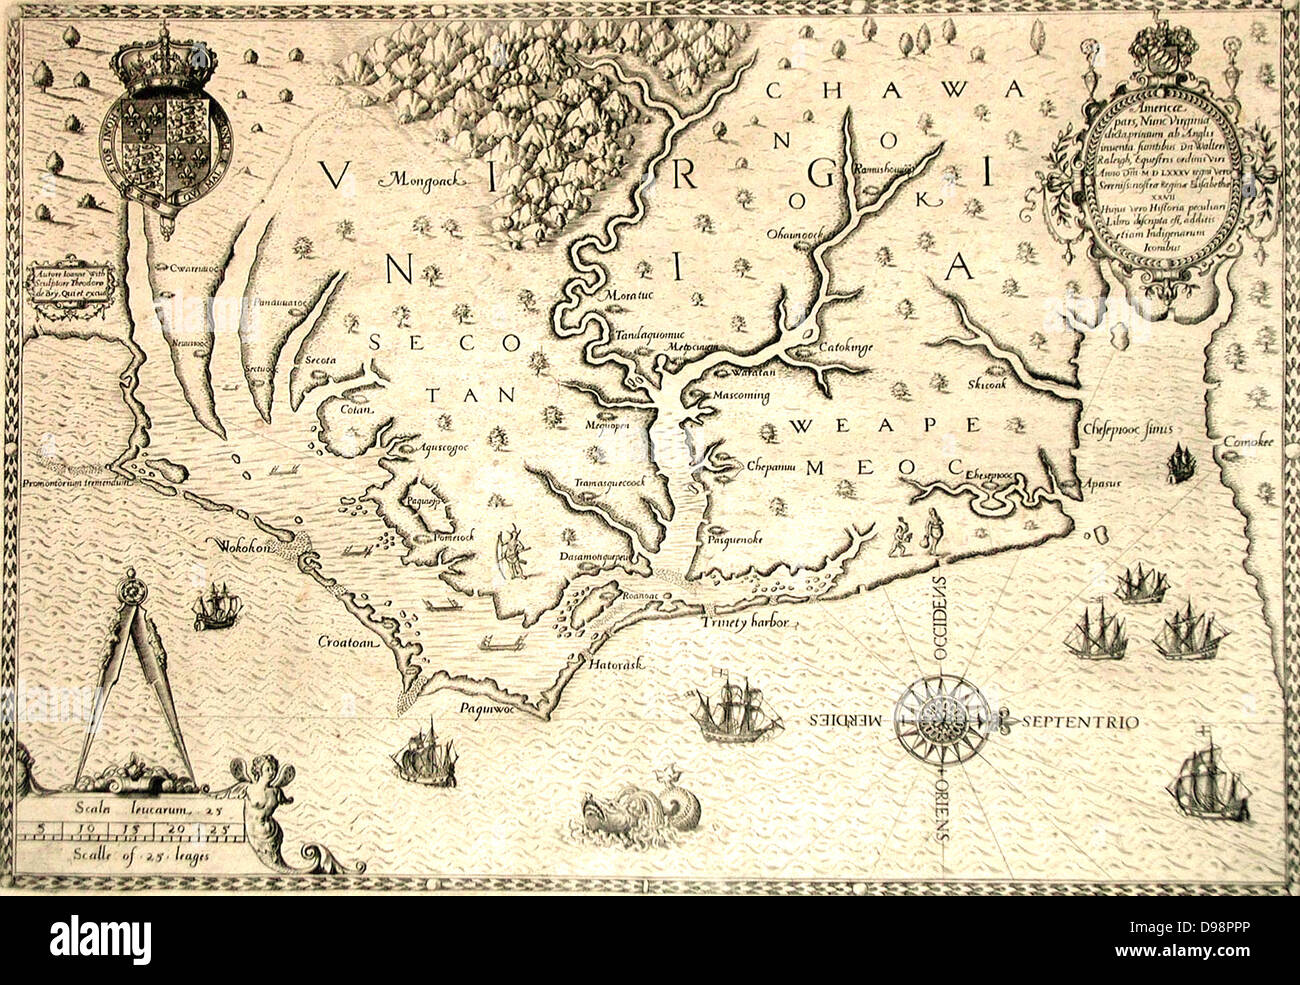 Karte von 1590 gestochen von Theodore de Bry nach Aquarell von den englischen Kolonisten John White, Gouverneur von Roanoke. Virginia und an der Küste mit kleinen Inseln und Roanoke an der Mündung des Flusses. Weapemeoc Secotan und Heimat. Stockfoto